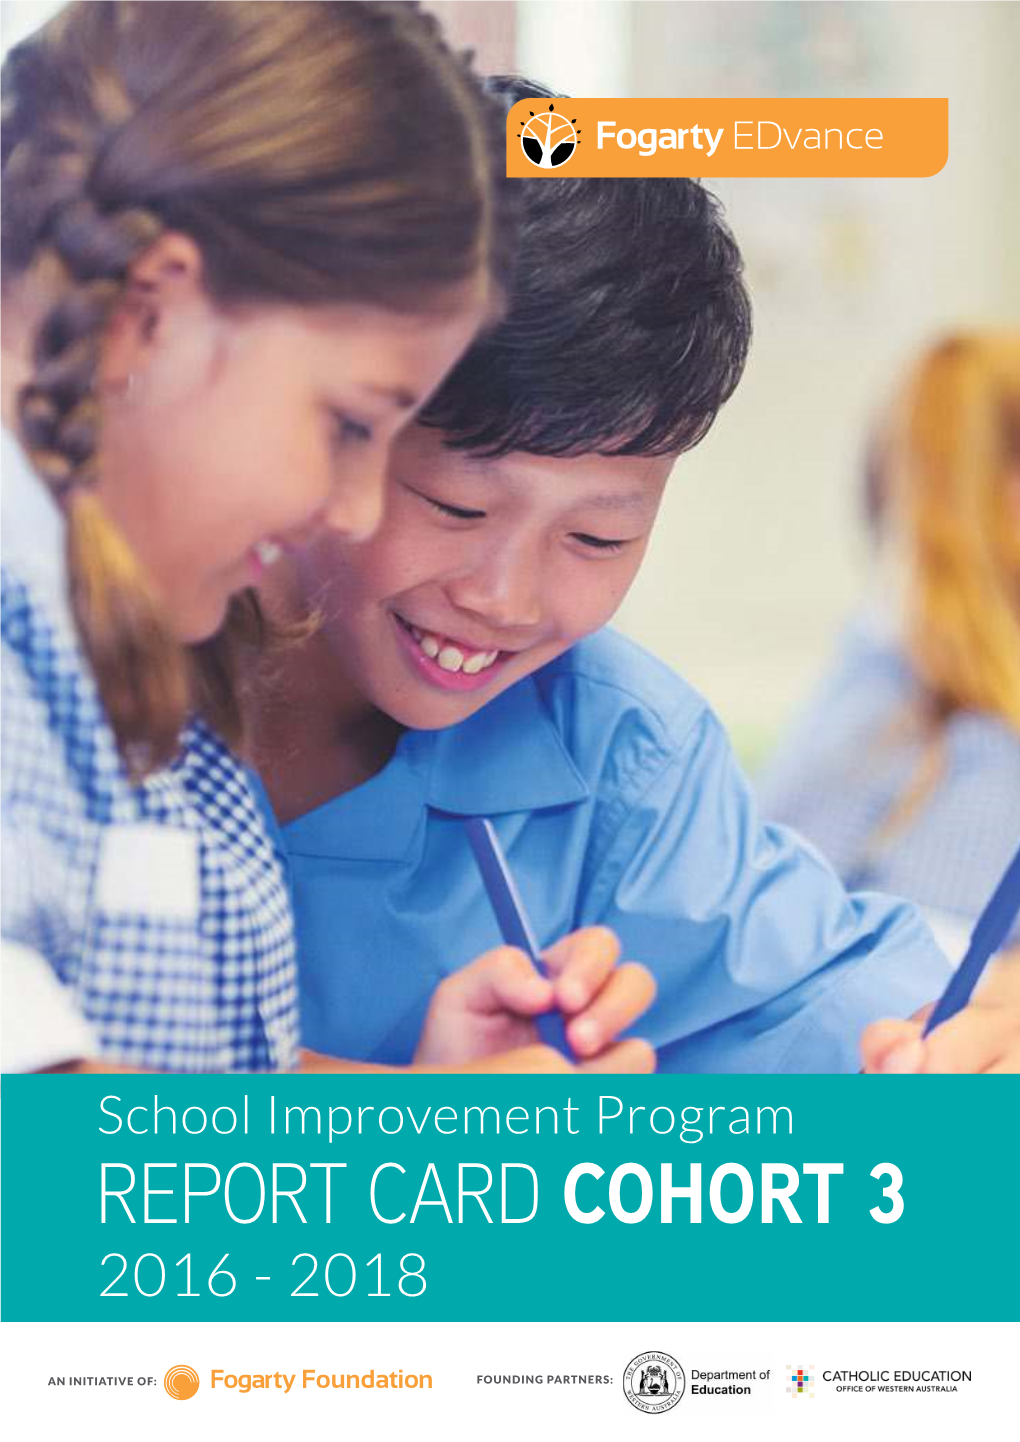 Report Card Cohort 3 2016 - 2018